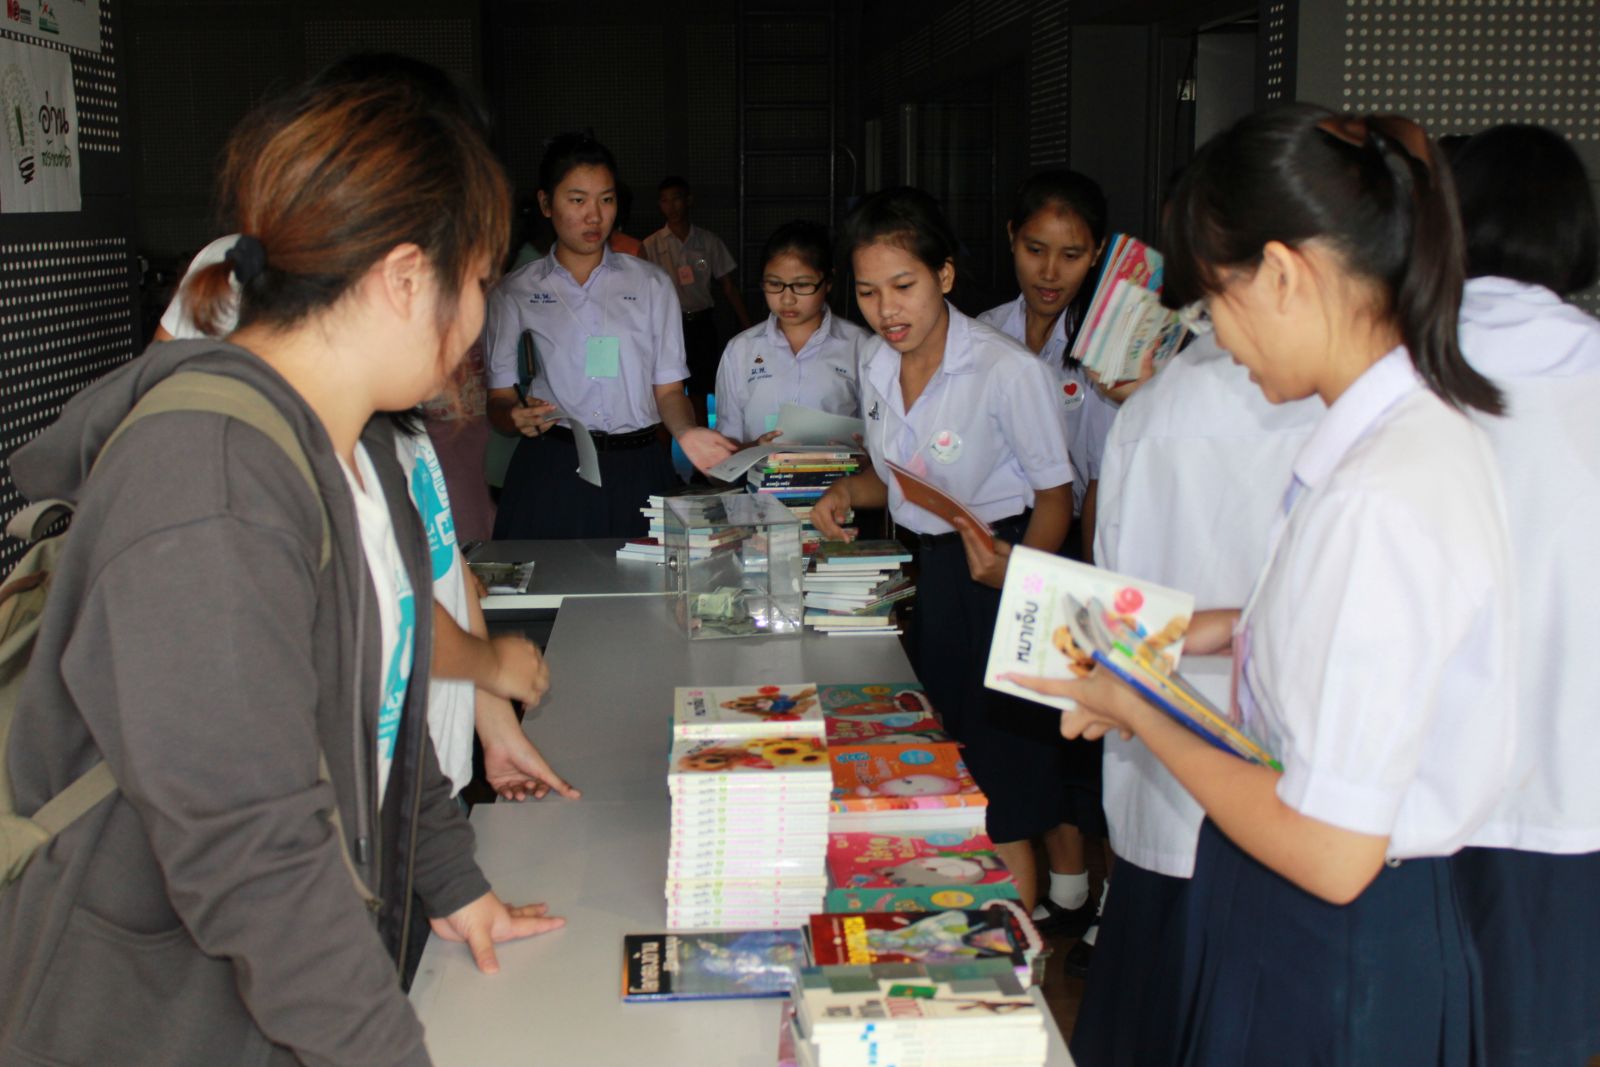 “สร้างสรรค์ไอเดีย สู่โรงเรียนเชียร์อ่าน” ปลูกฝังเด็กไทยหัวใจรักการอ่าน